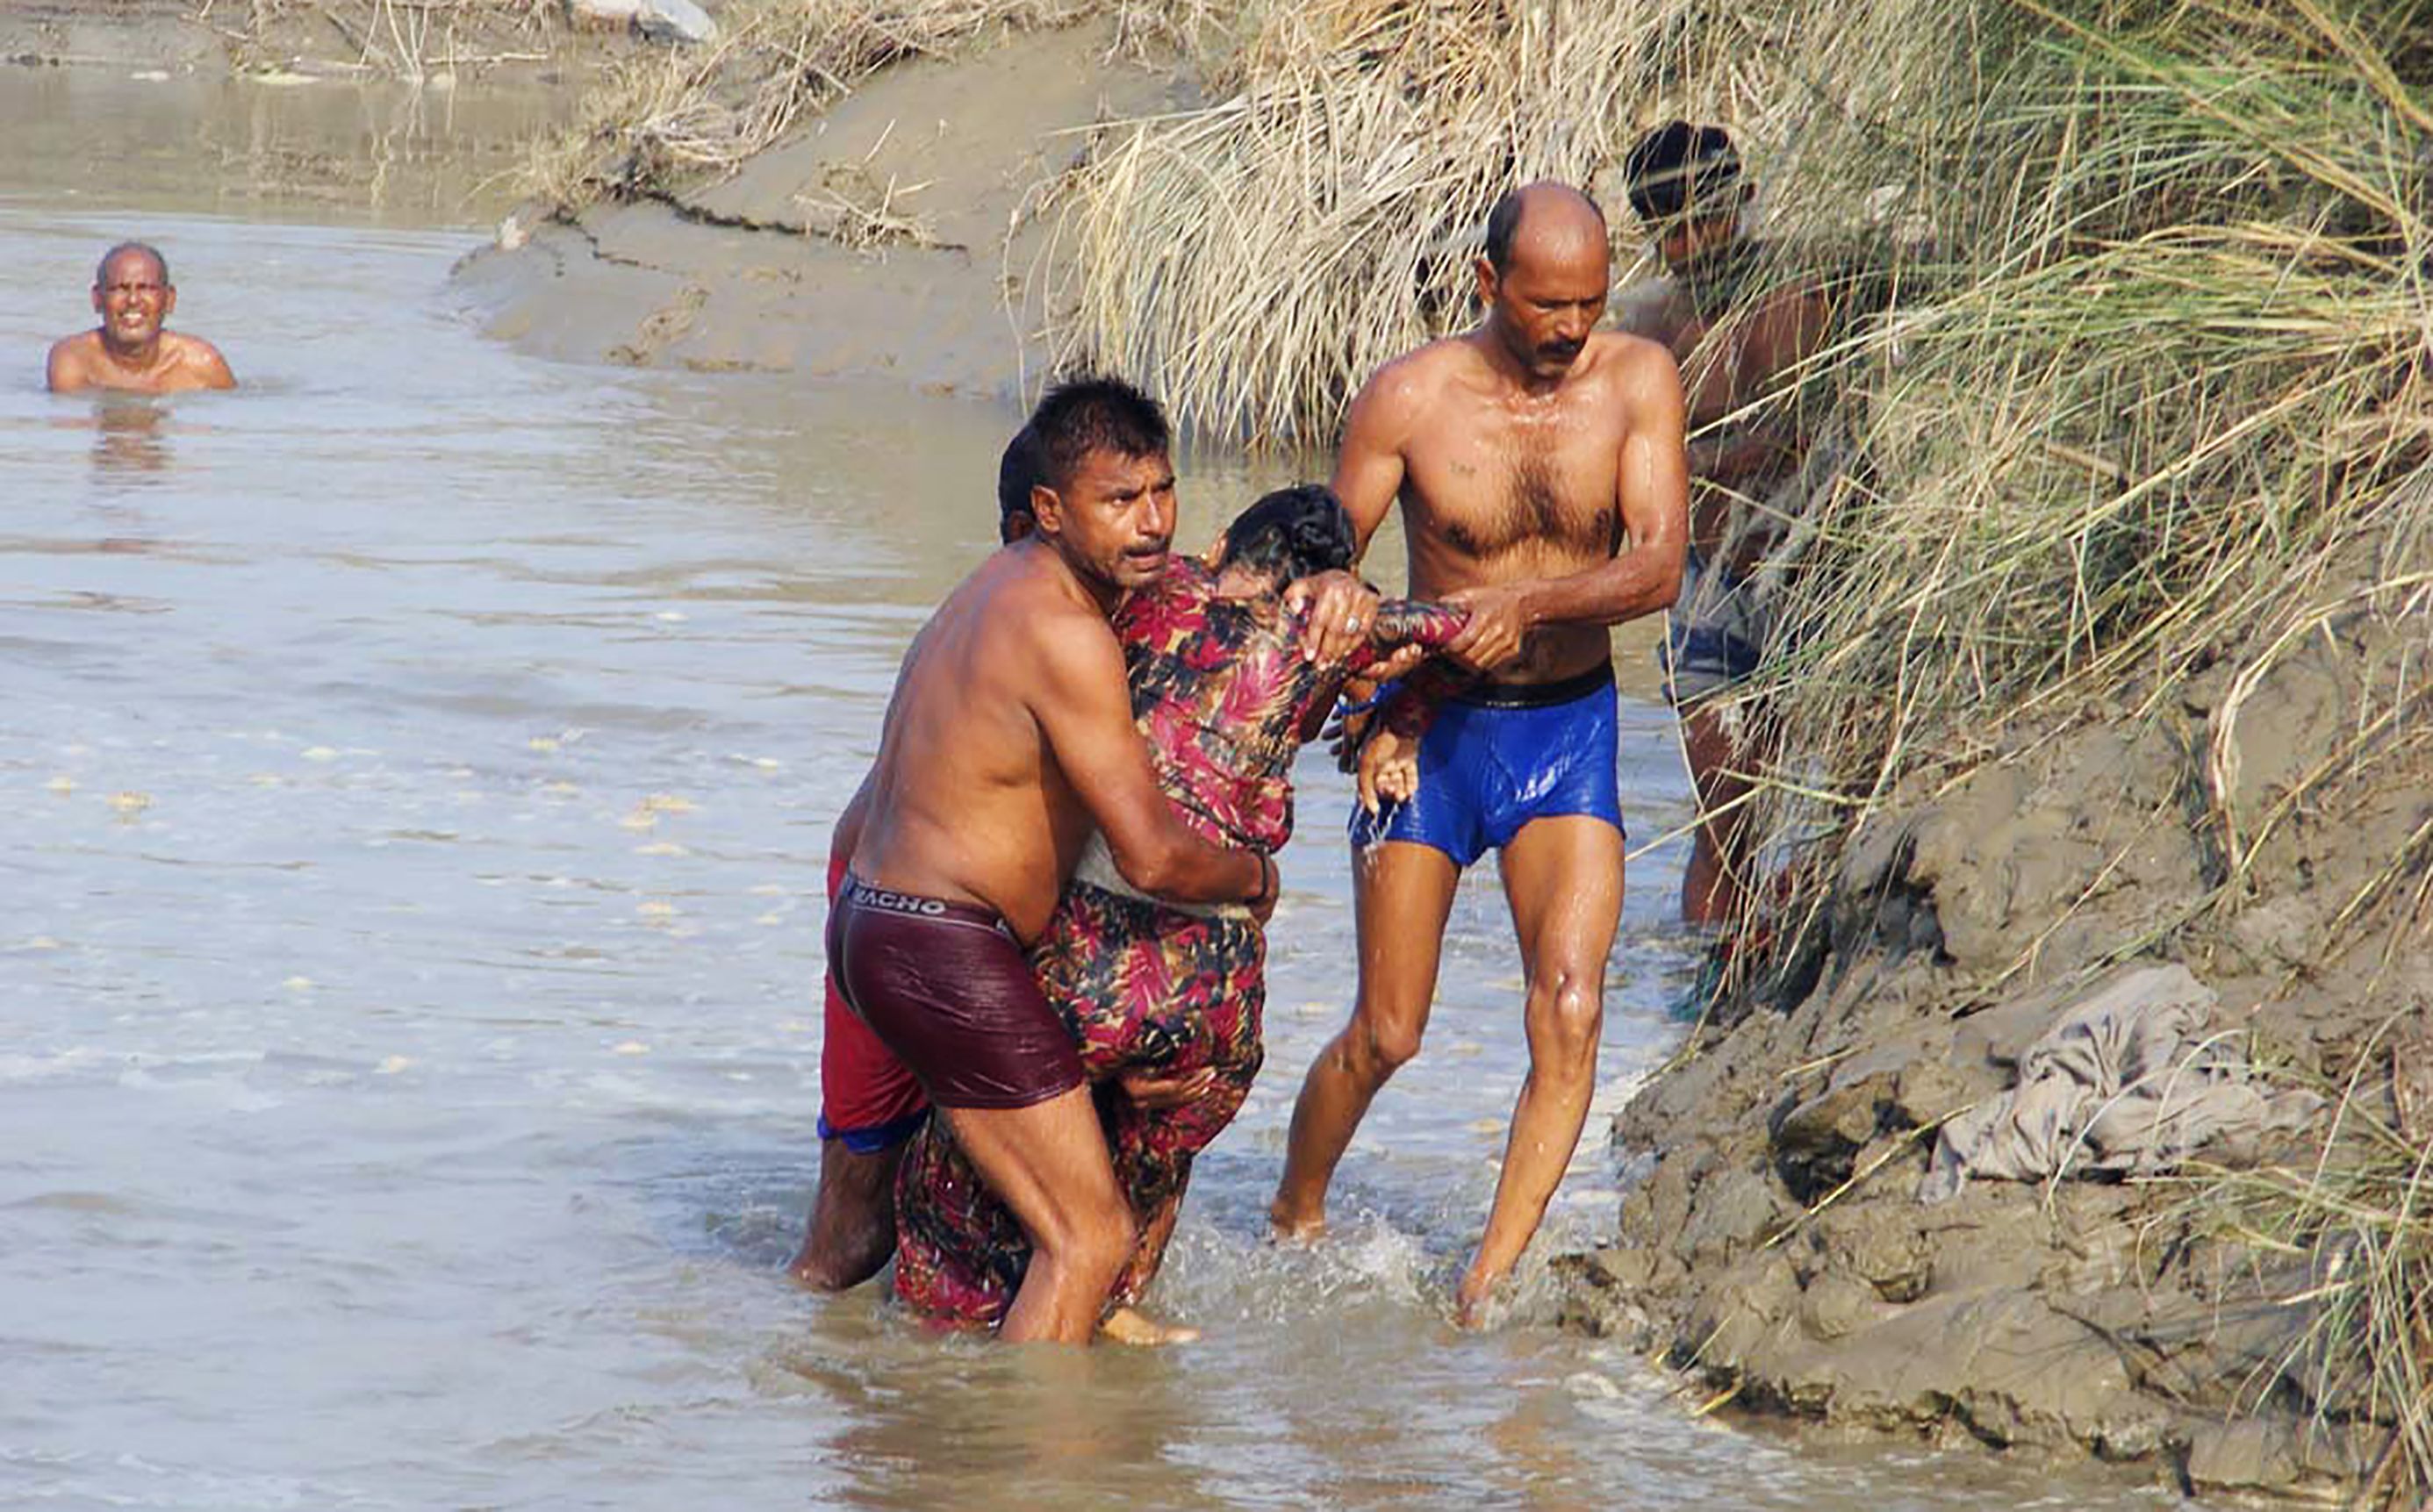 20 قتيلا على الاقل اثر غرق مركب في نهر يامونا بالهند